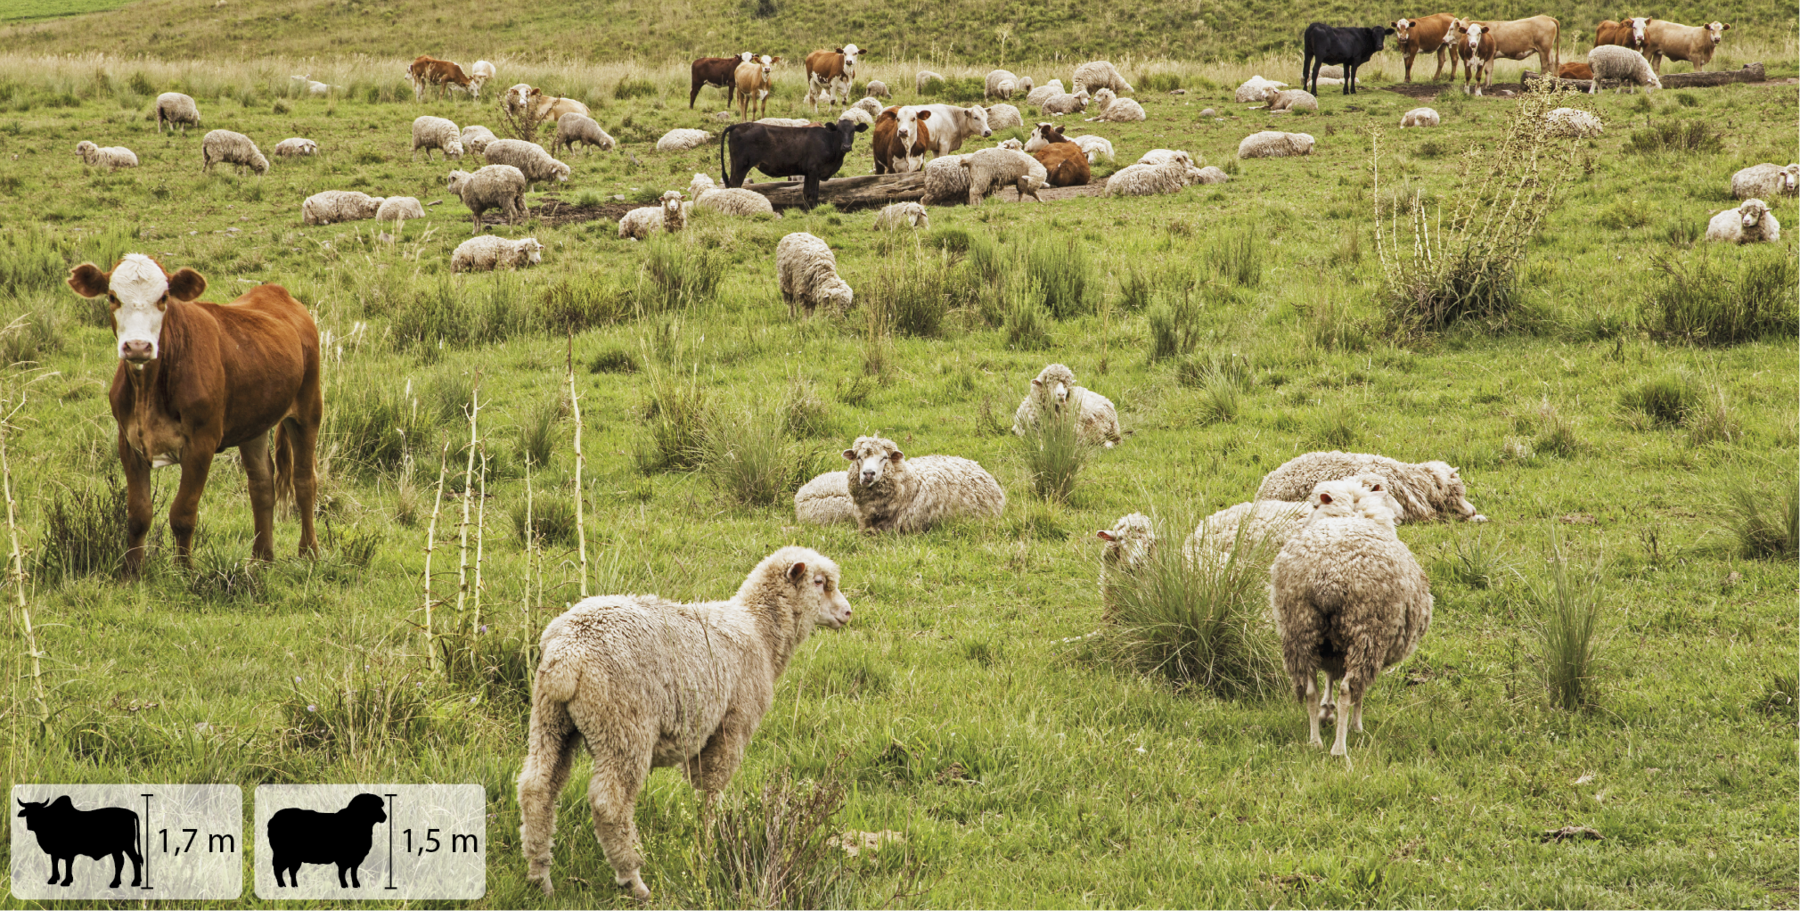 Fotografia. Vista de campo aberto com vegetação rasteira. Há ovelhas beges e vacas pretas e marrons dispersas no ambiente. No canto inferior esquerdo, pequena ilustração de vaca indicando 1,7 metro de altura, e de ovelha indicando 1,5 metro de altura.